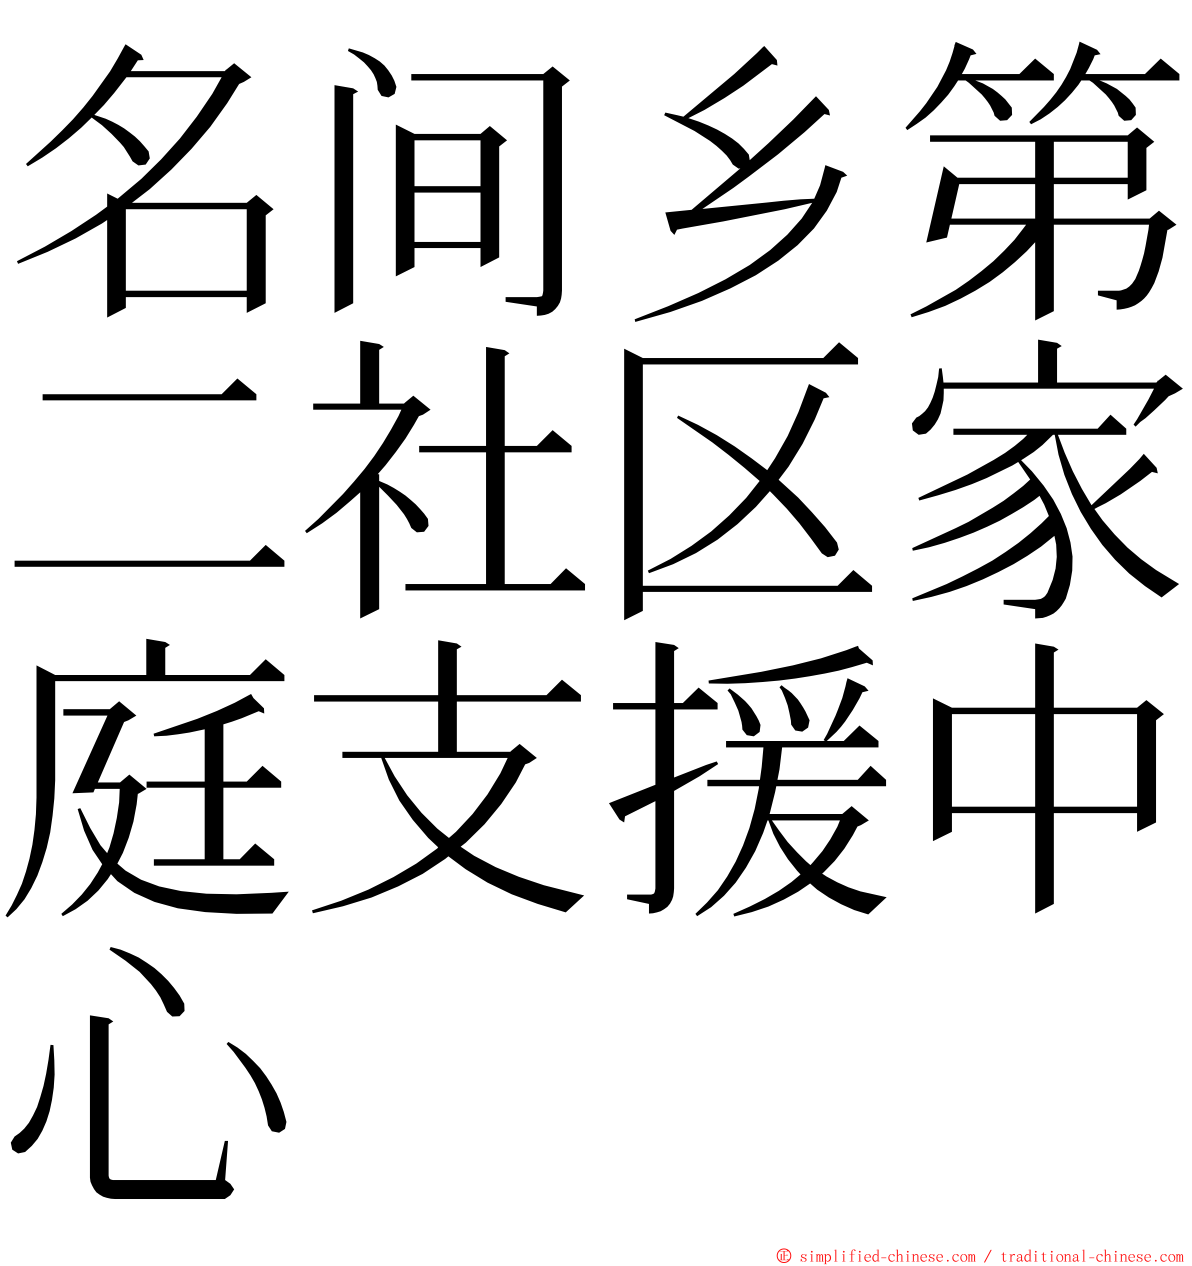 名间乡第二社区家庭支援中心 ming font